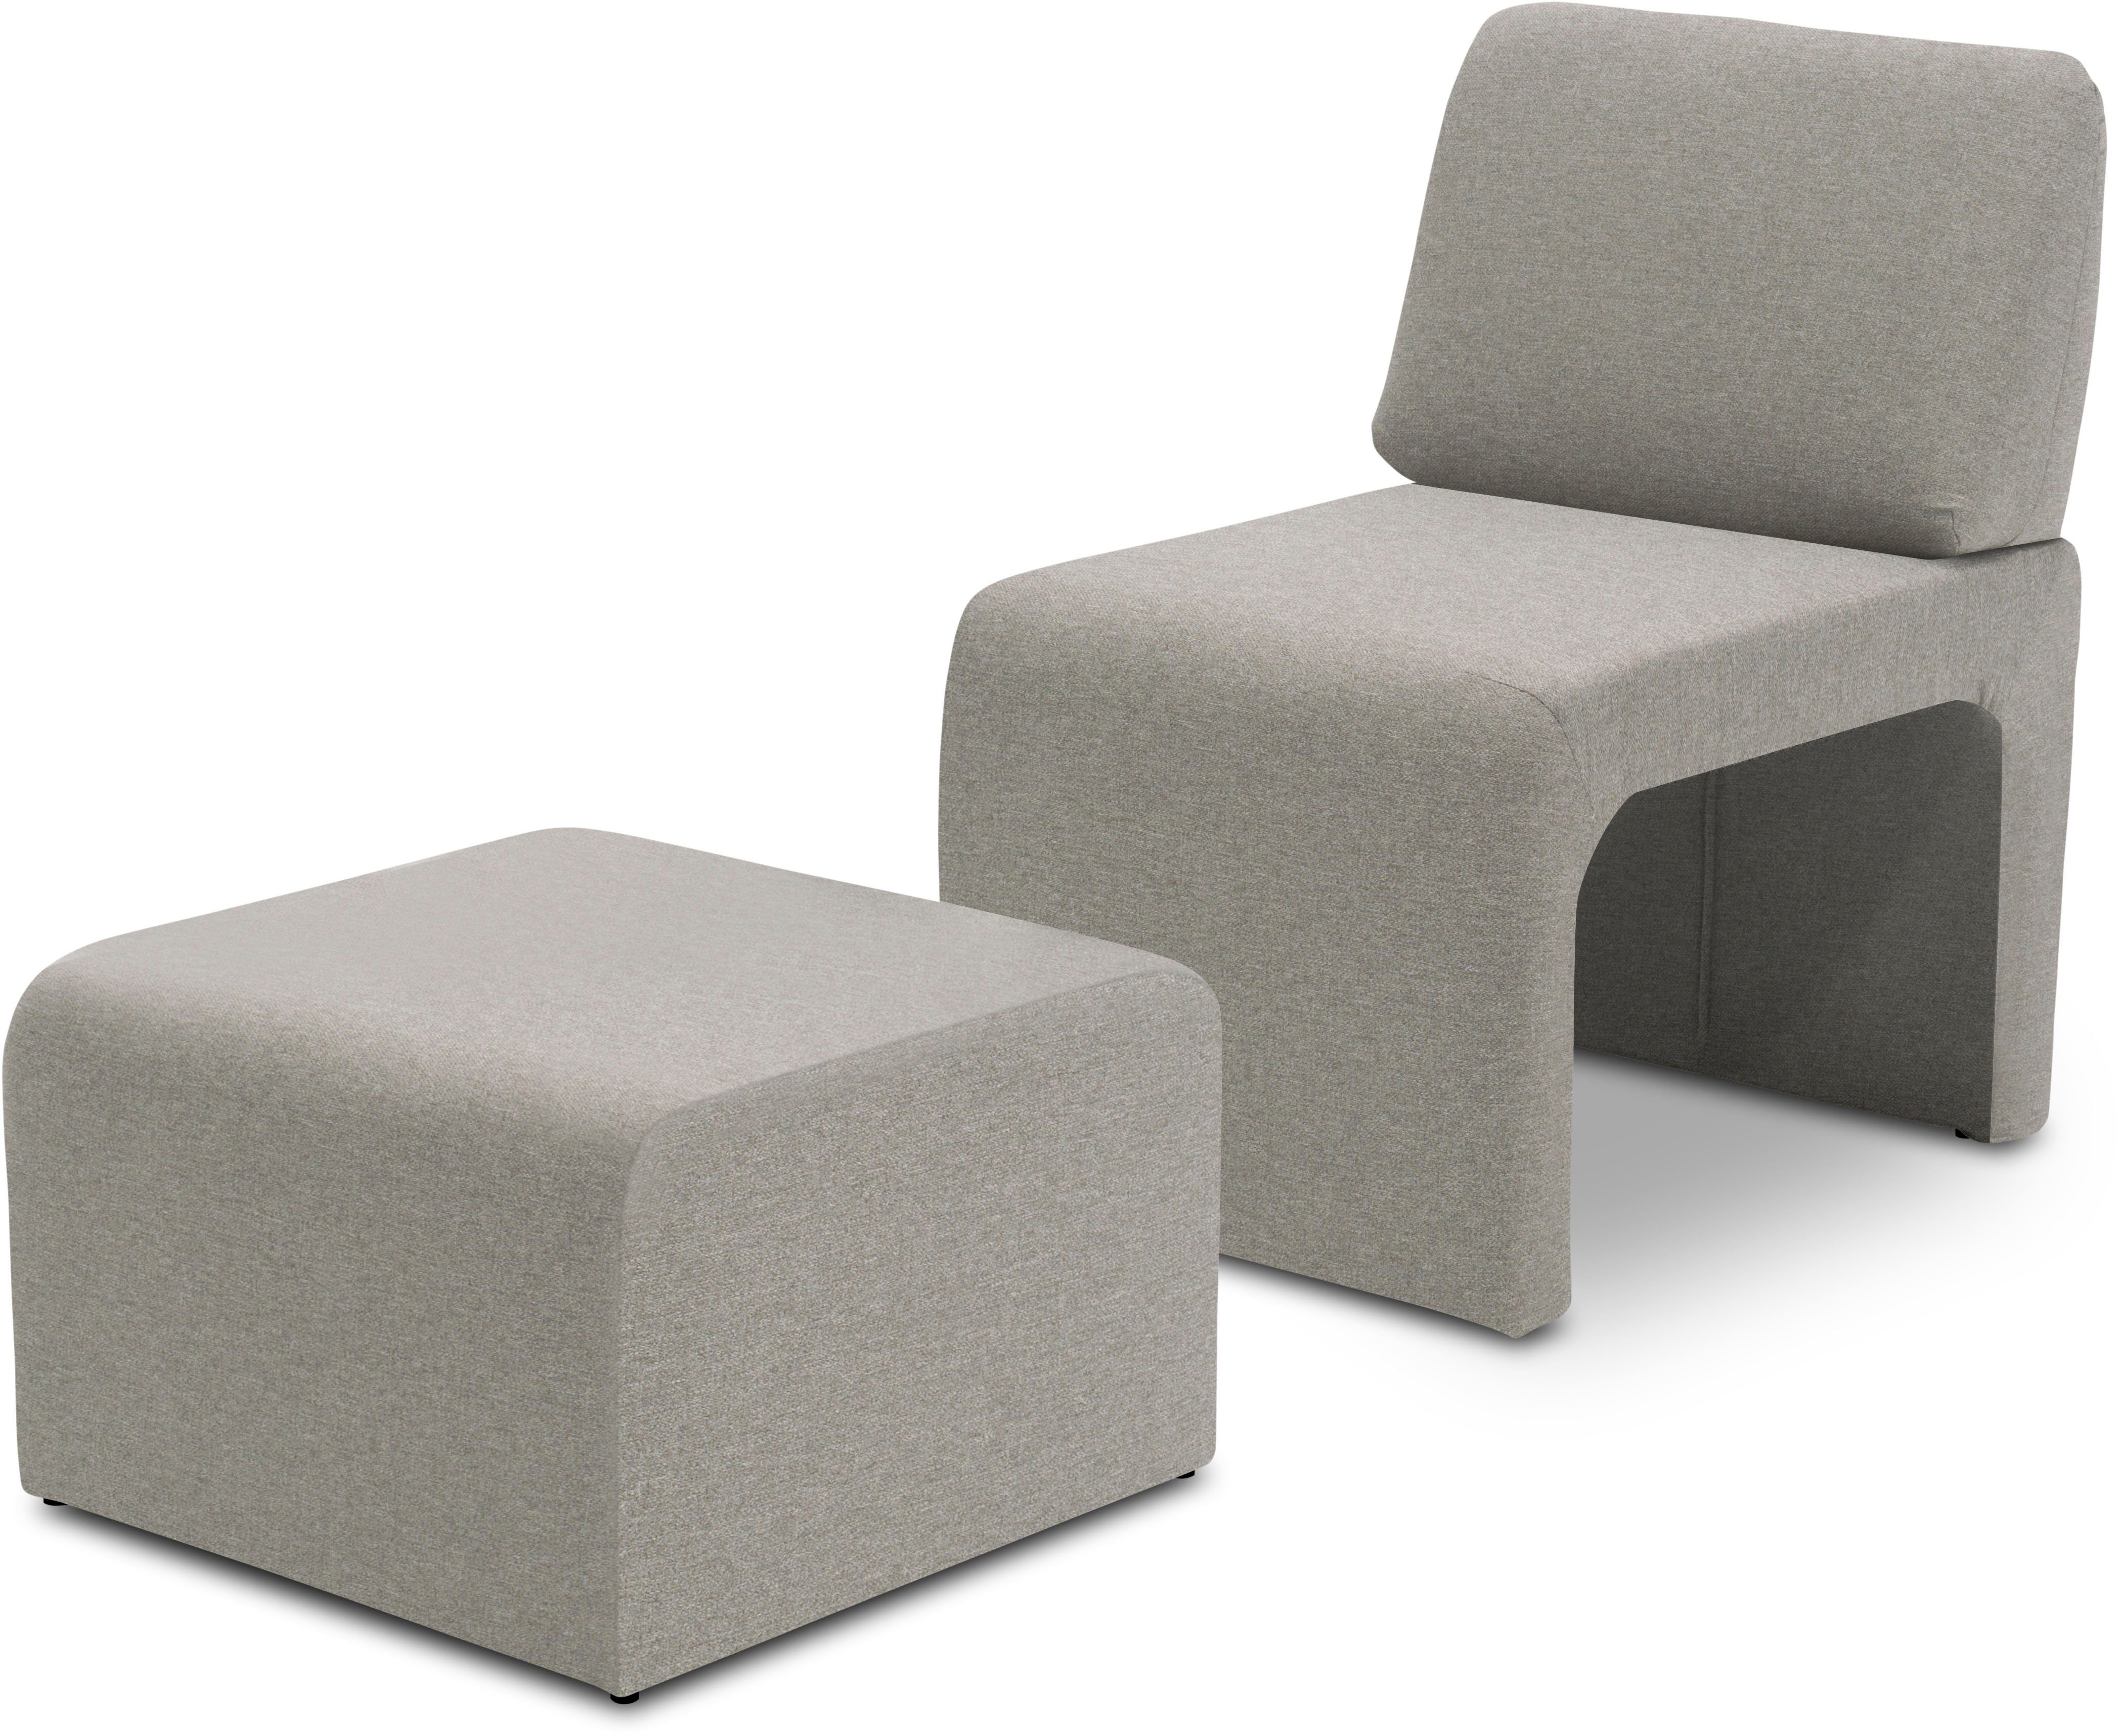 DOMO collection Sessel mit Hocker 700017 ideal für kleine Räume, platzsparend, bequem, Hocker unter dem Sessel verstaubar, lieferbar in nur 2 Wochen